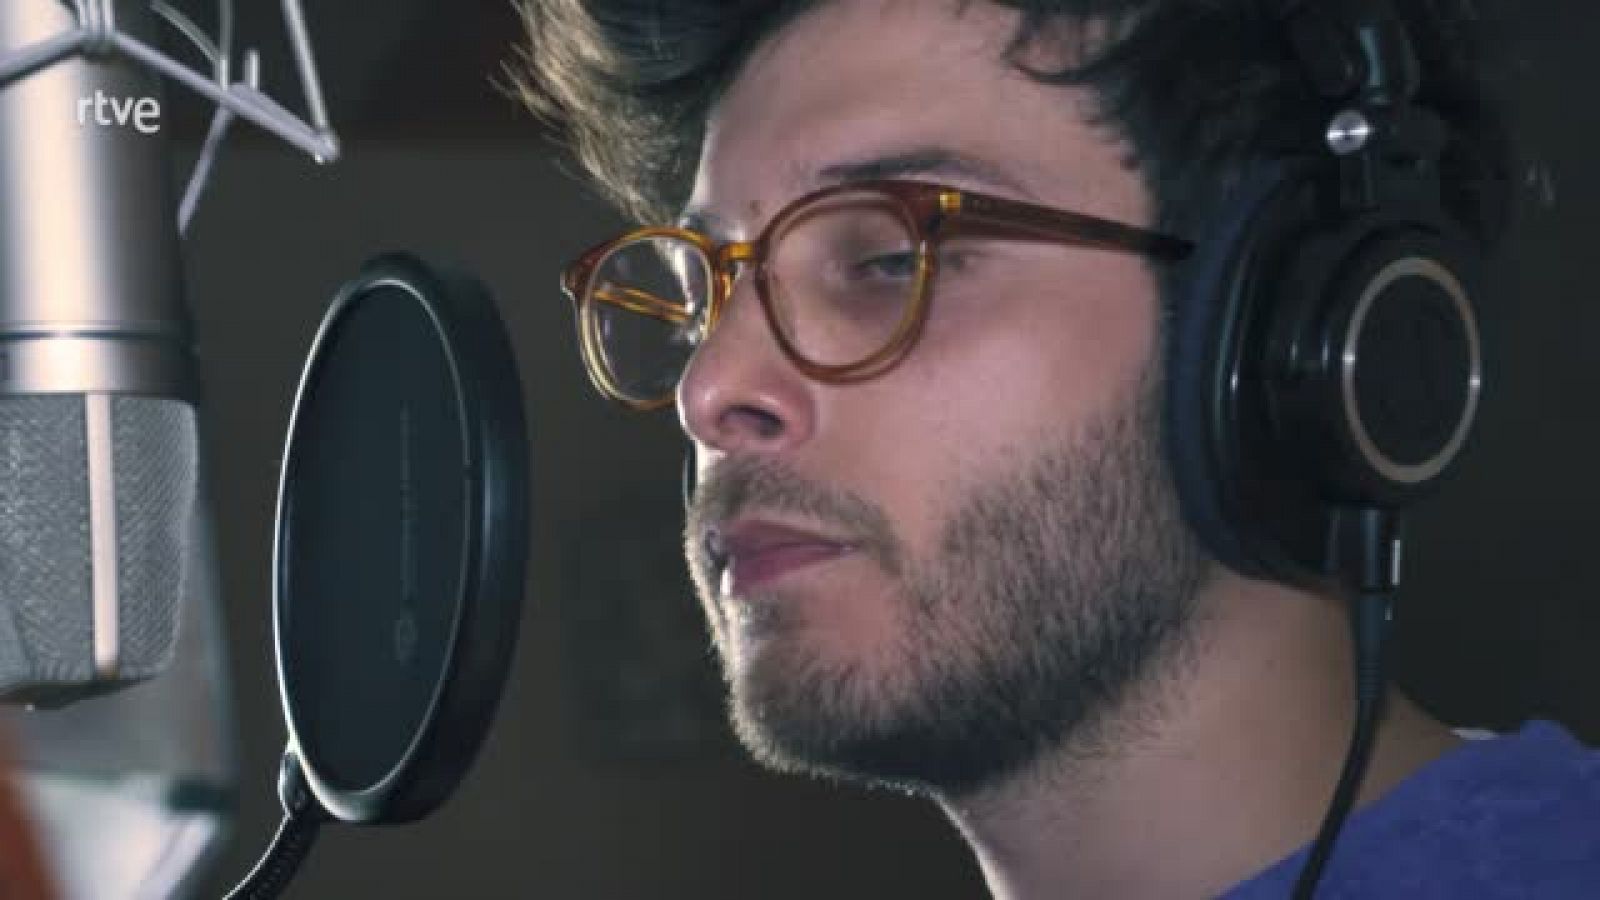 Eurovisión 2021 - Blas Cantó graba "Voy a quedarme" en inglés